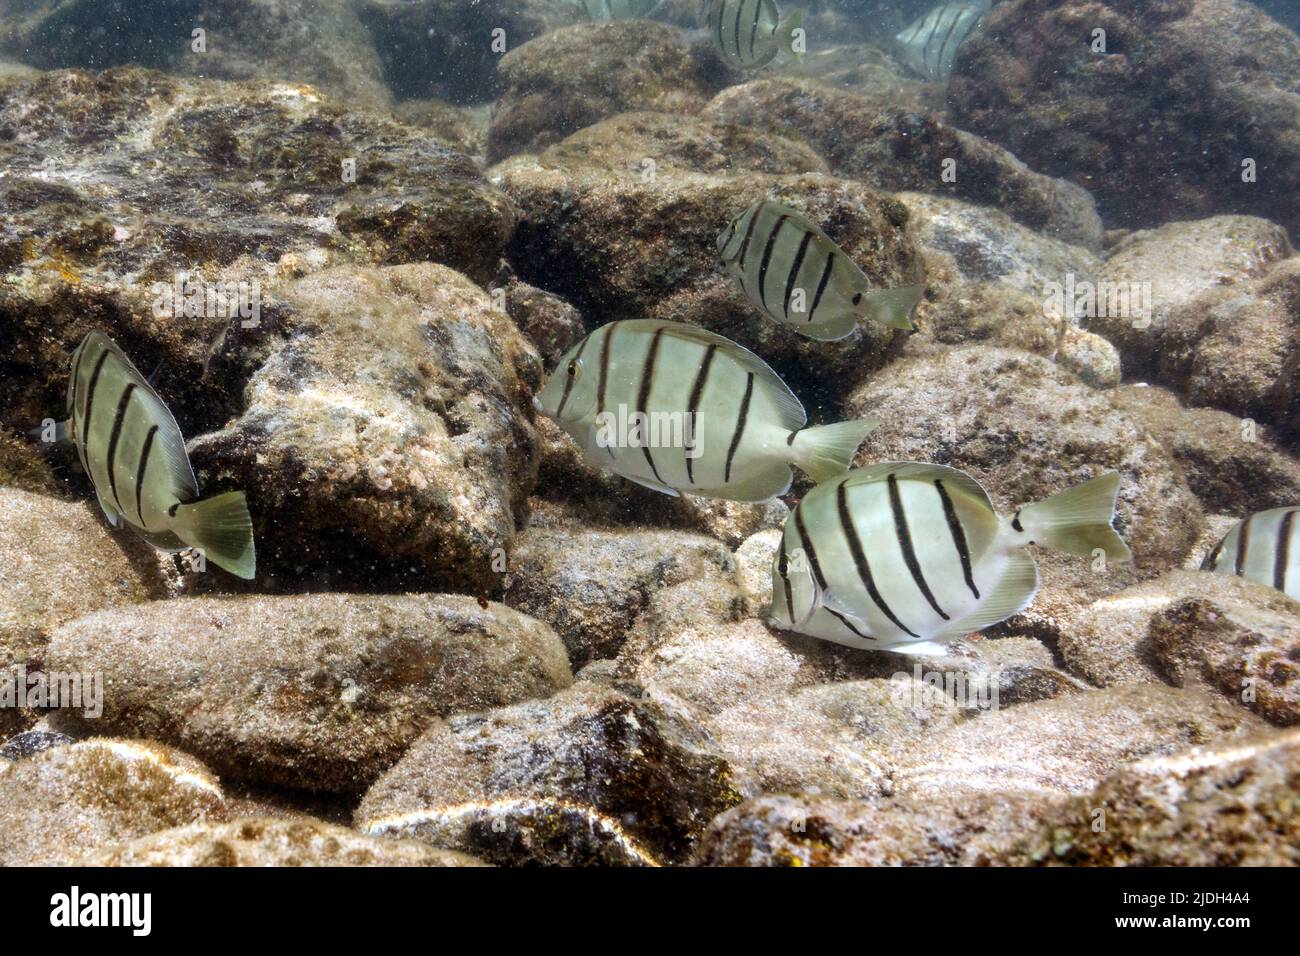 Tang de bagnards, surgéonfish de bagnards (Acanthurus triosgus), recherche de nourriture dans une petite école, États-Unis, Hawaï, Maui Banque D'Images